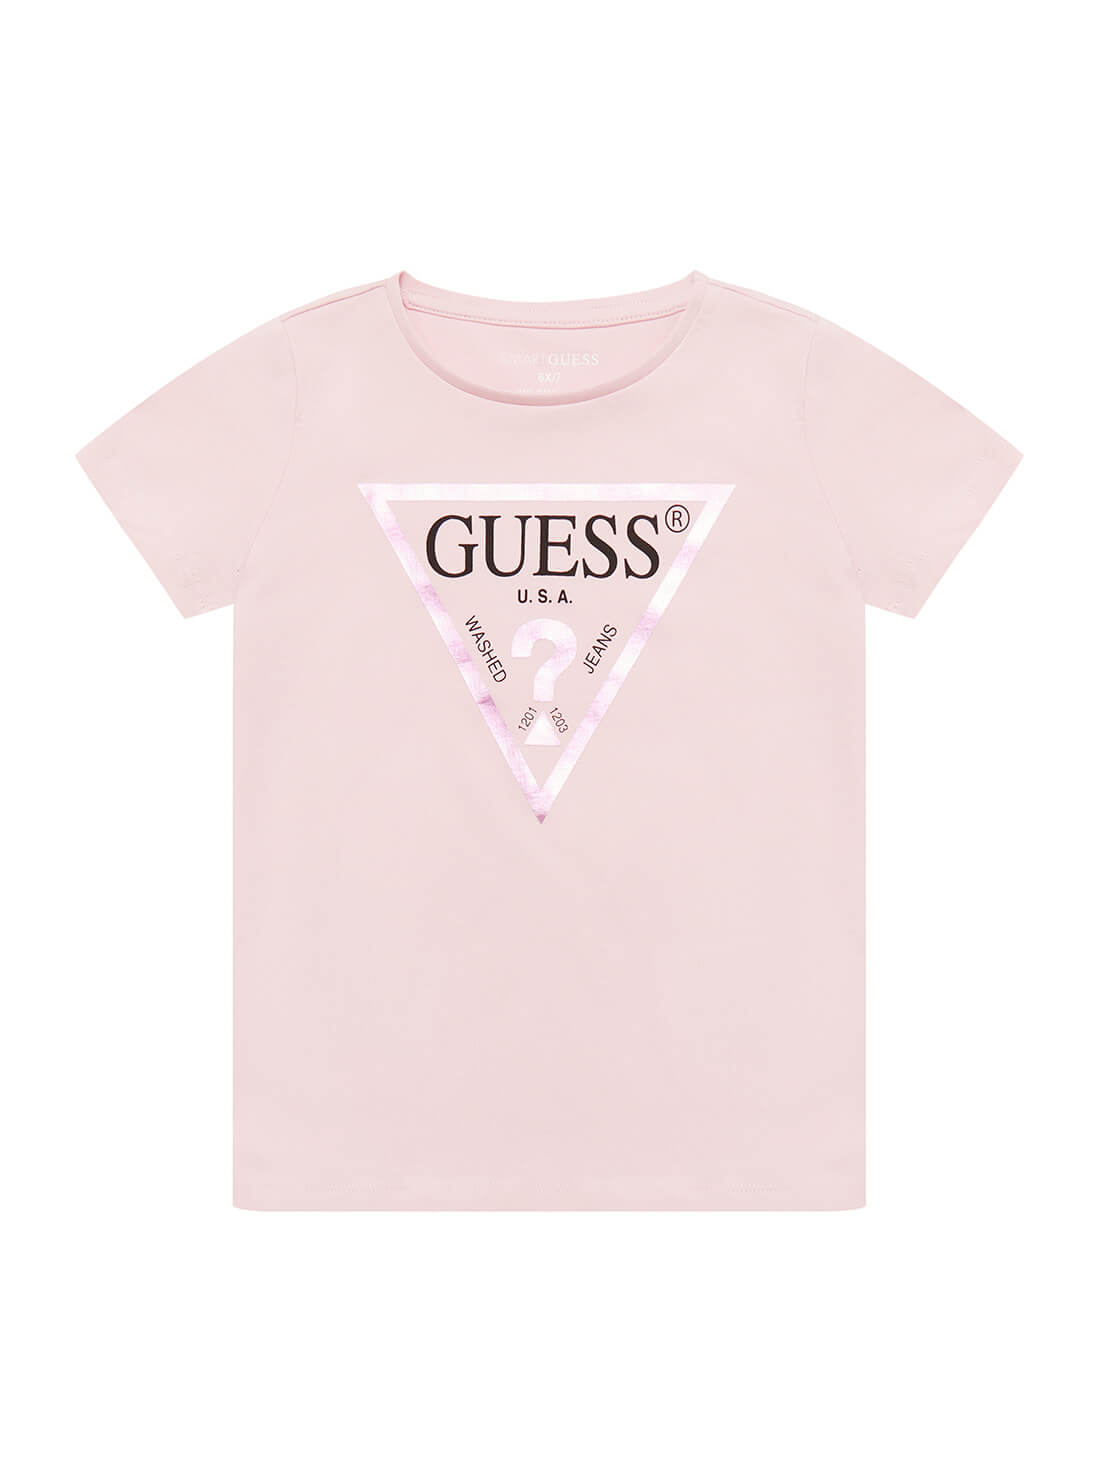 GUESS Little Girls  Light Pink Sequin T-Shirt (2-7) K73I56K8HM0 Front View